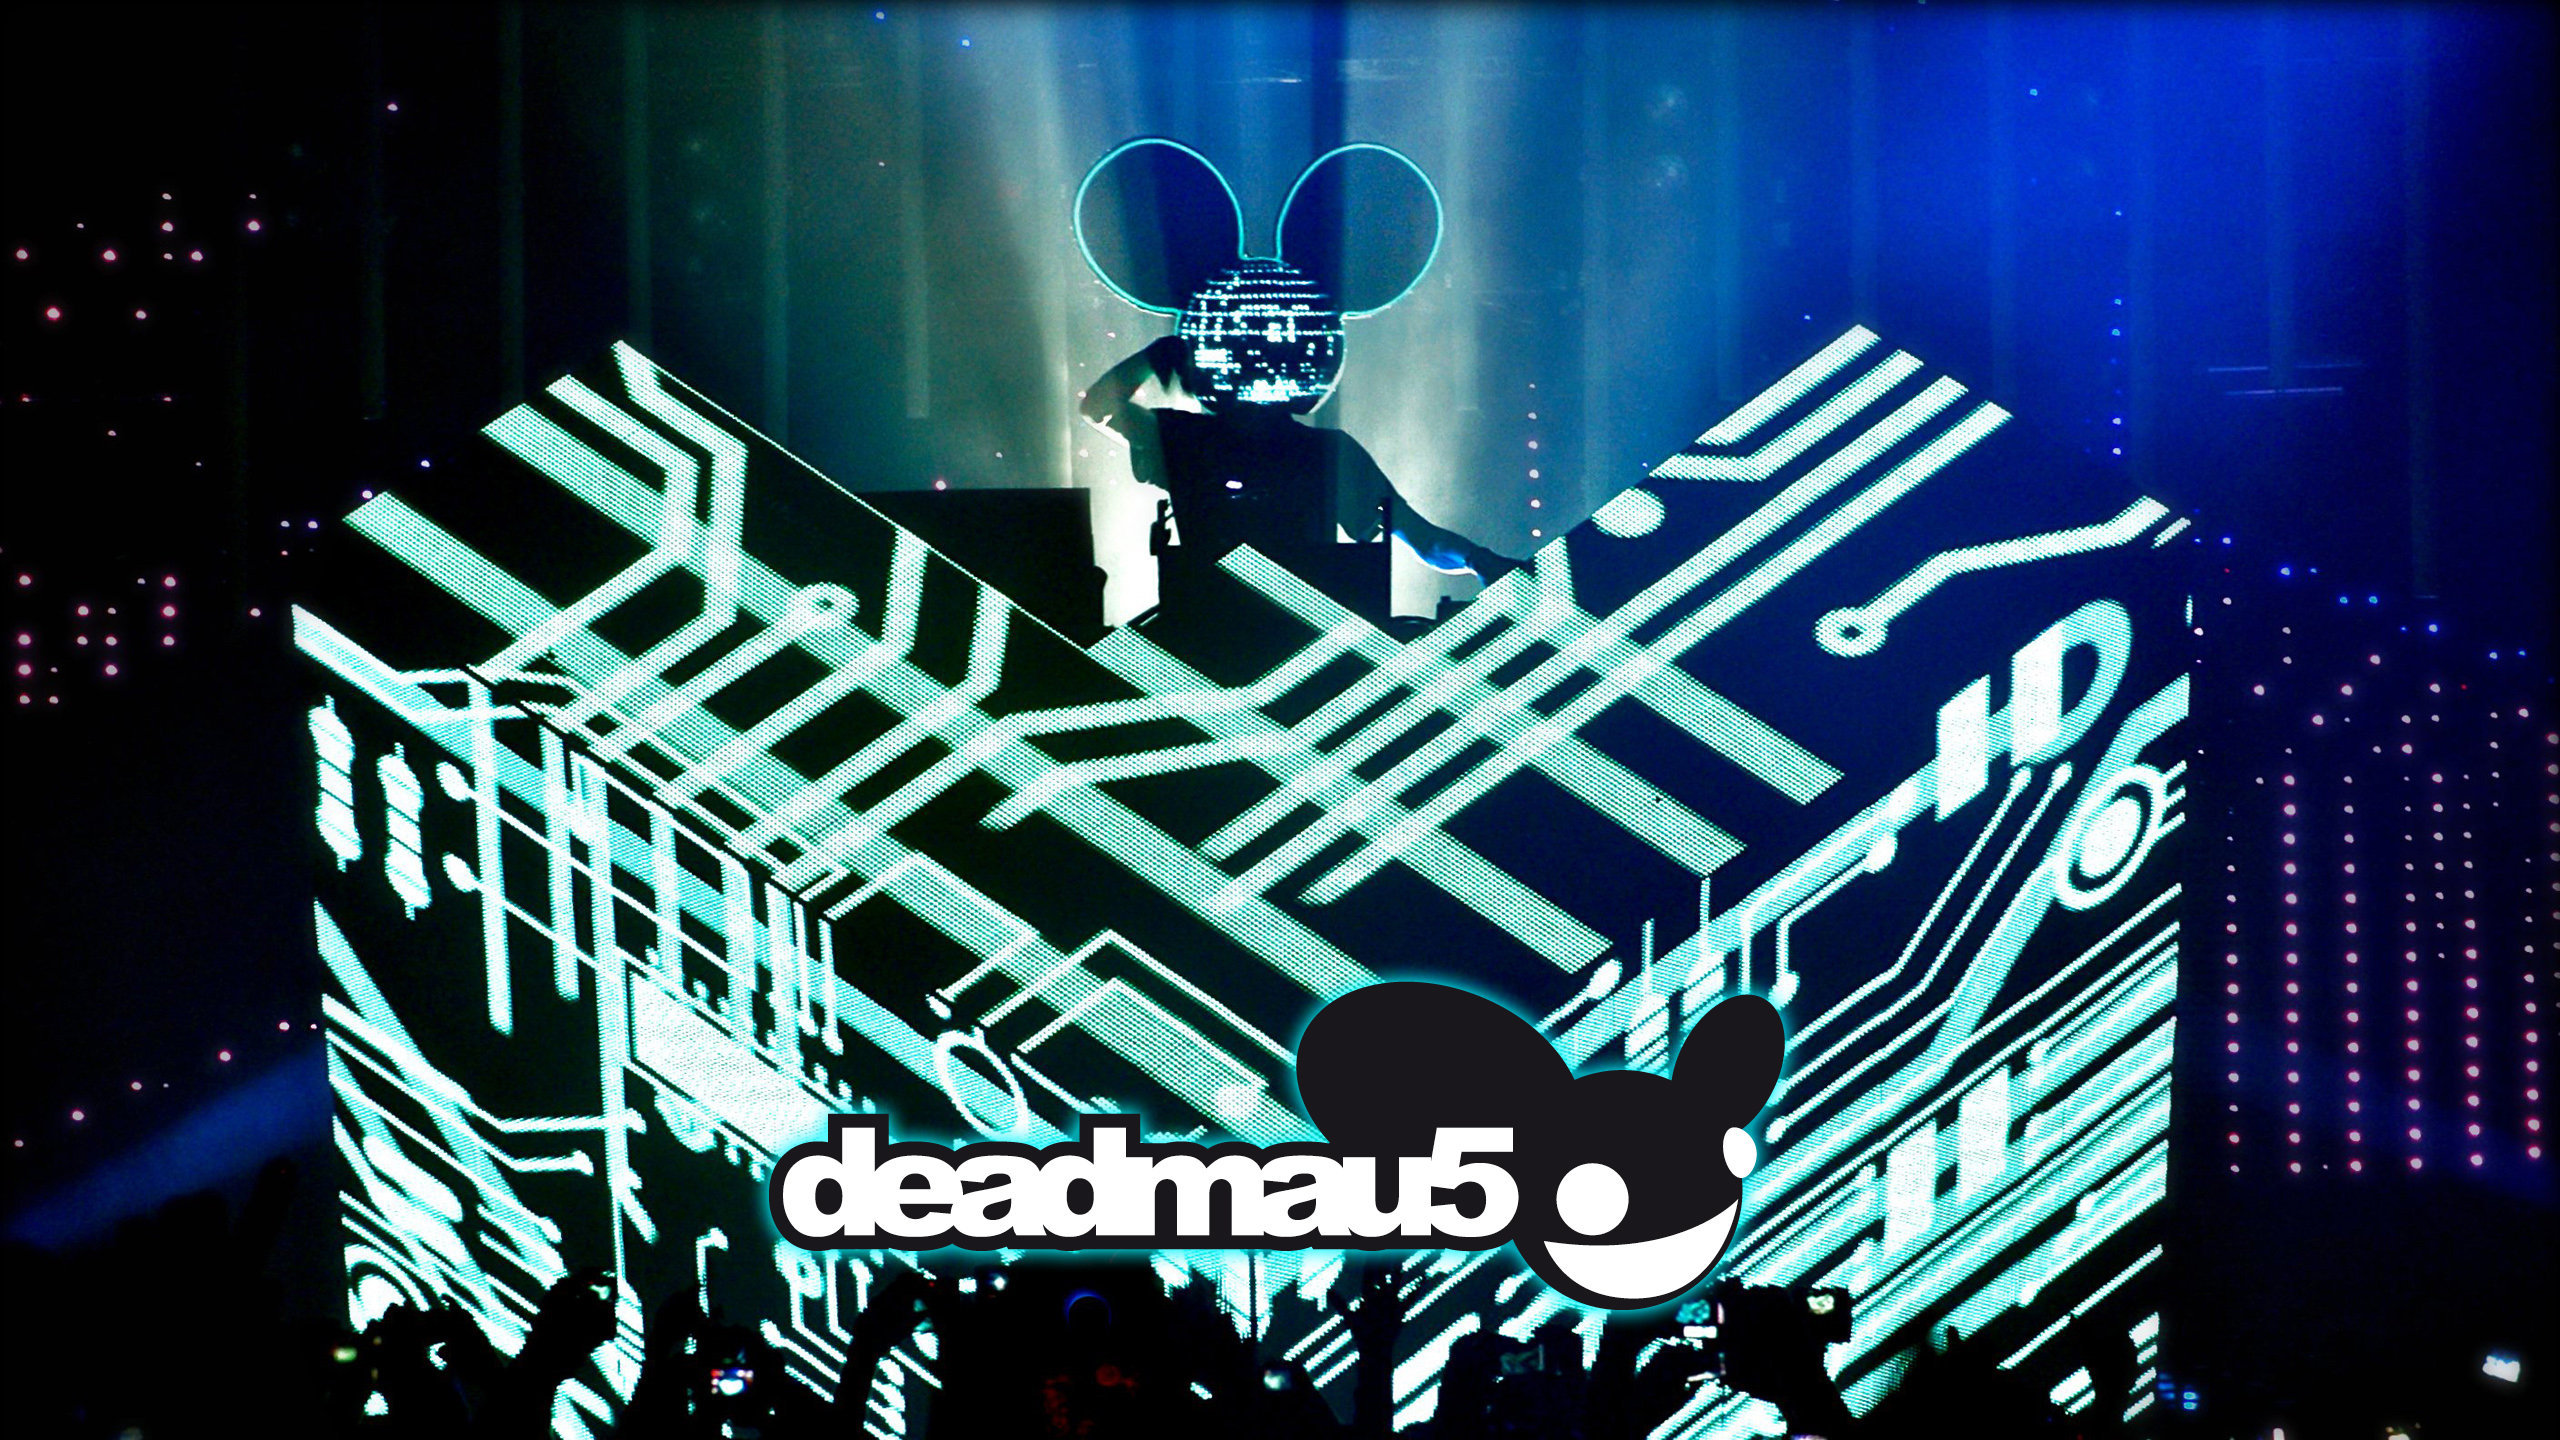 Deadmau5 DJ Booth Wallpaper